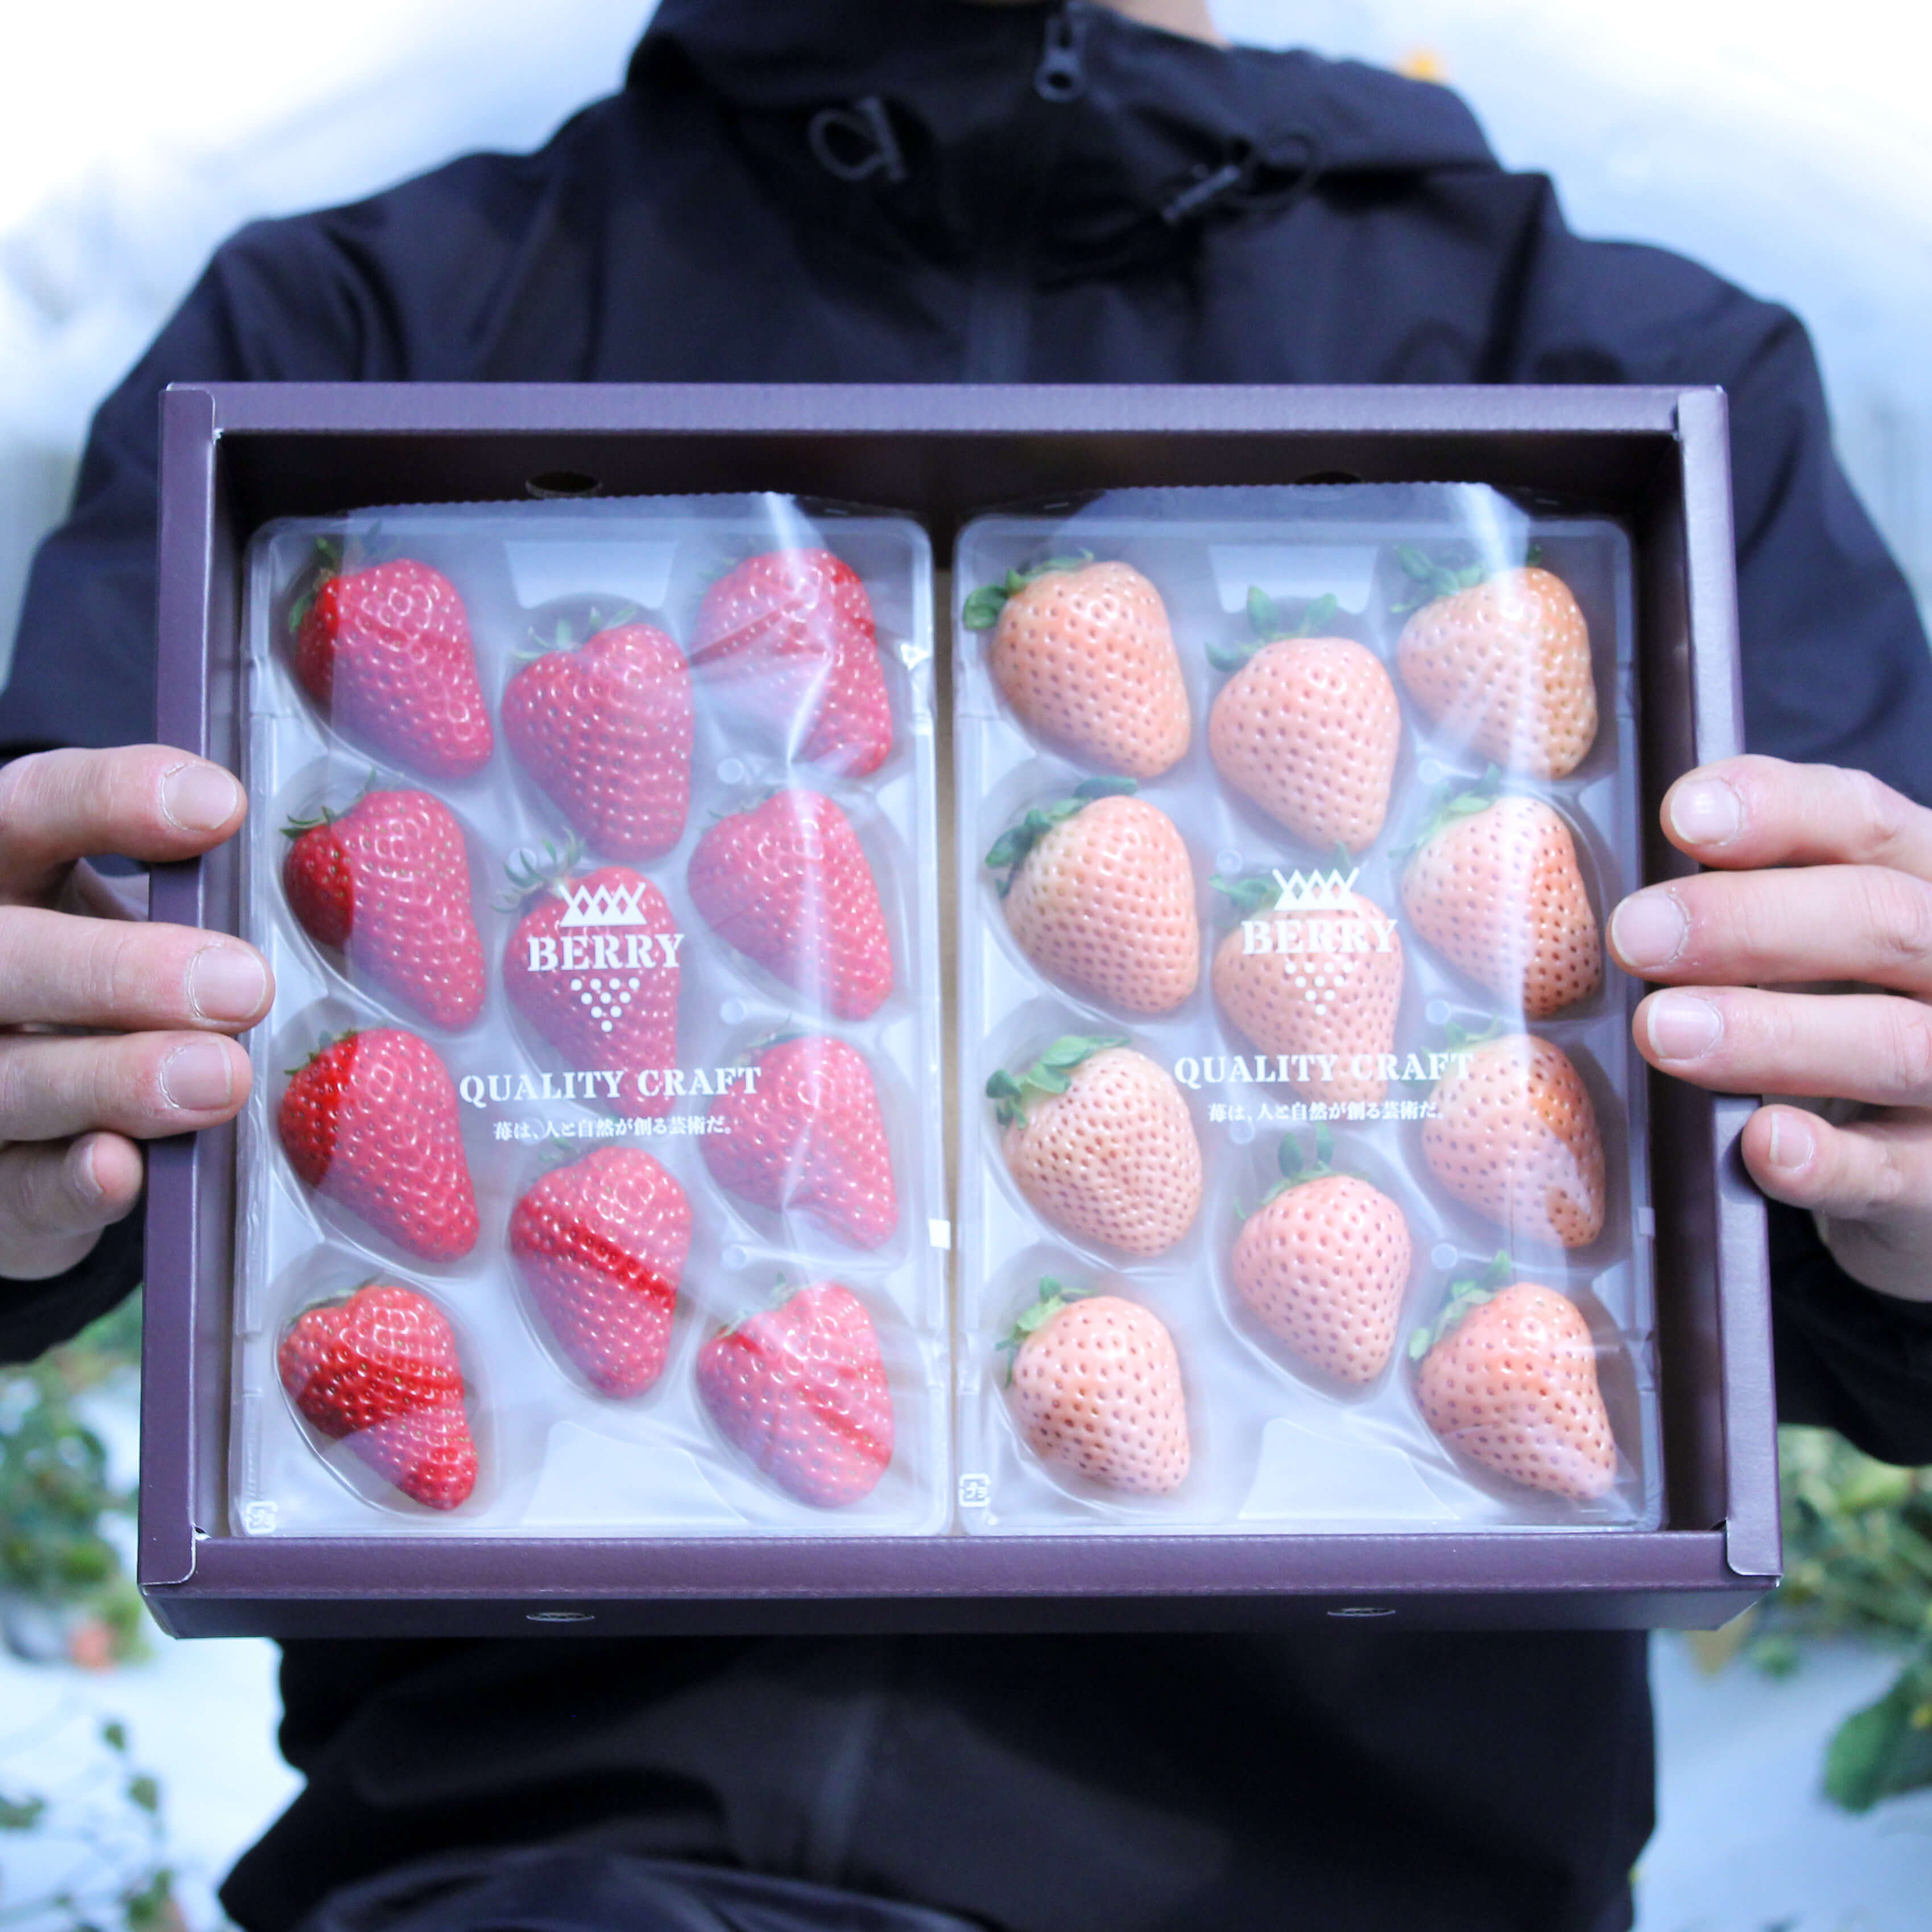 完熟紅白いちご 紅ほっぺ 淡雪 セット 伊賀農園直送 Berry ベリー 公式オンラインショップ 苺は人と自然が創る 芸術 だ